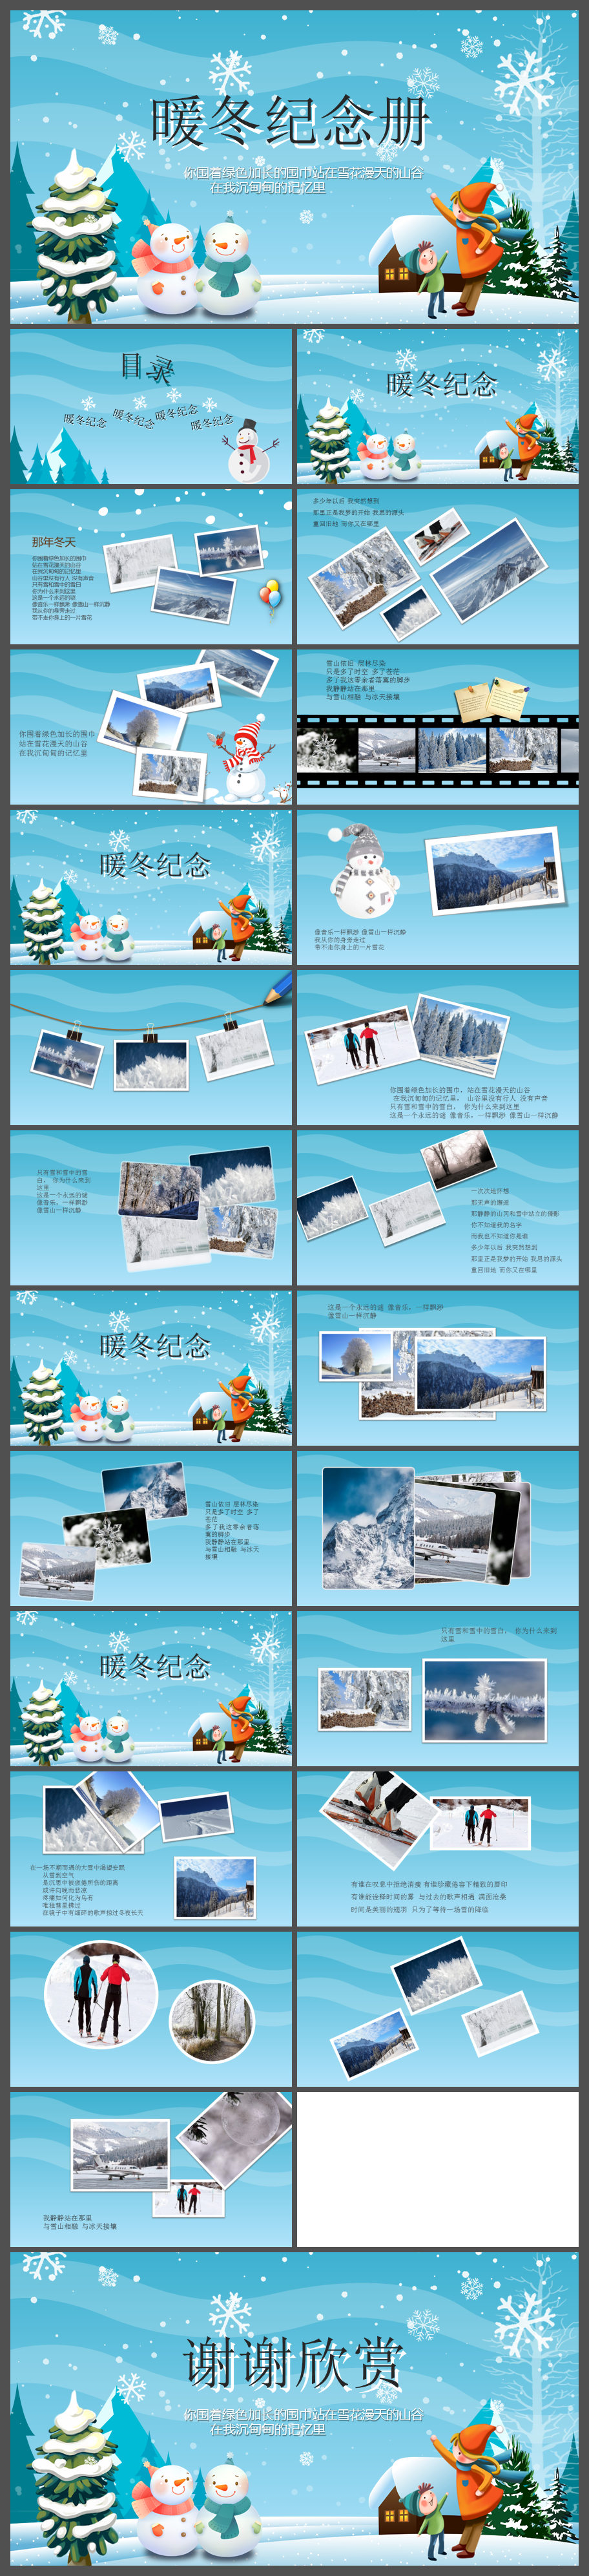 蓝色卡通暖冬旅游纪念相册PPT模板